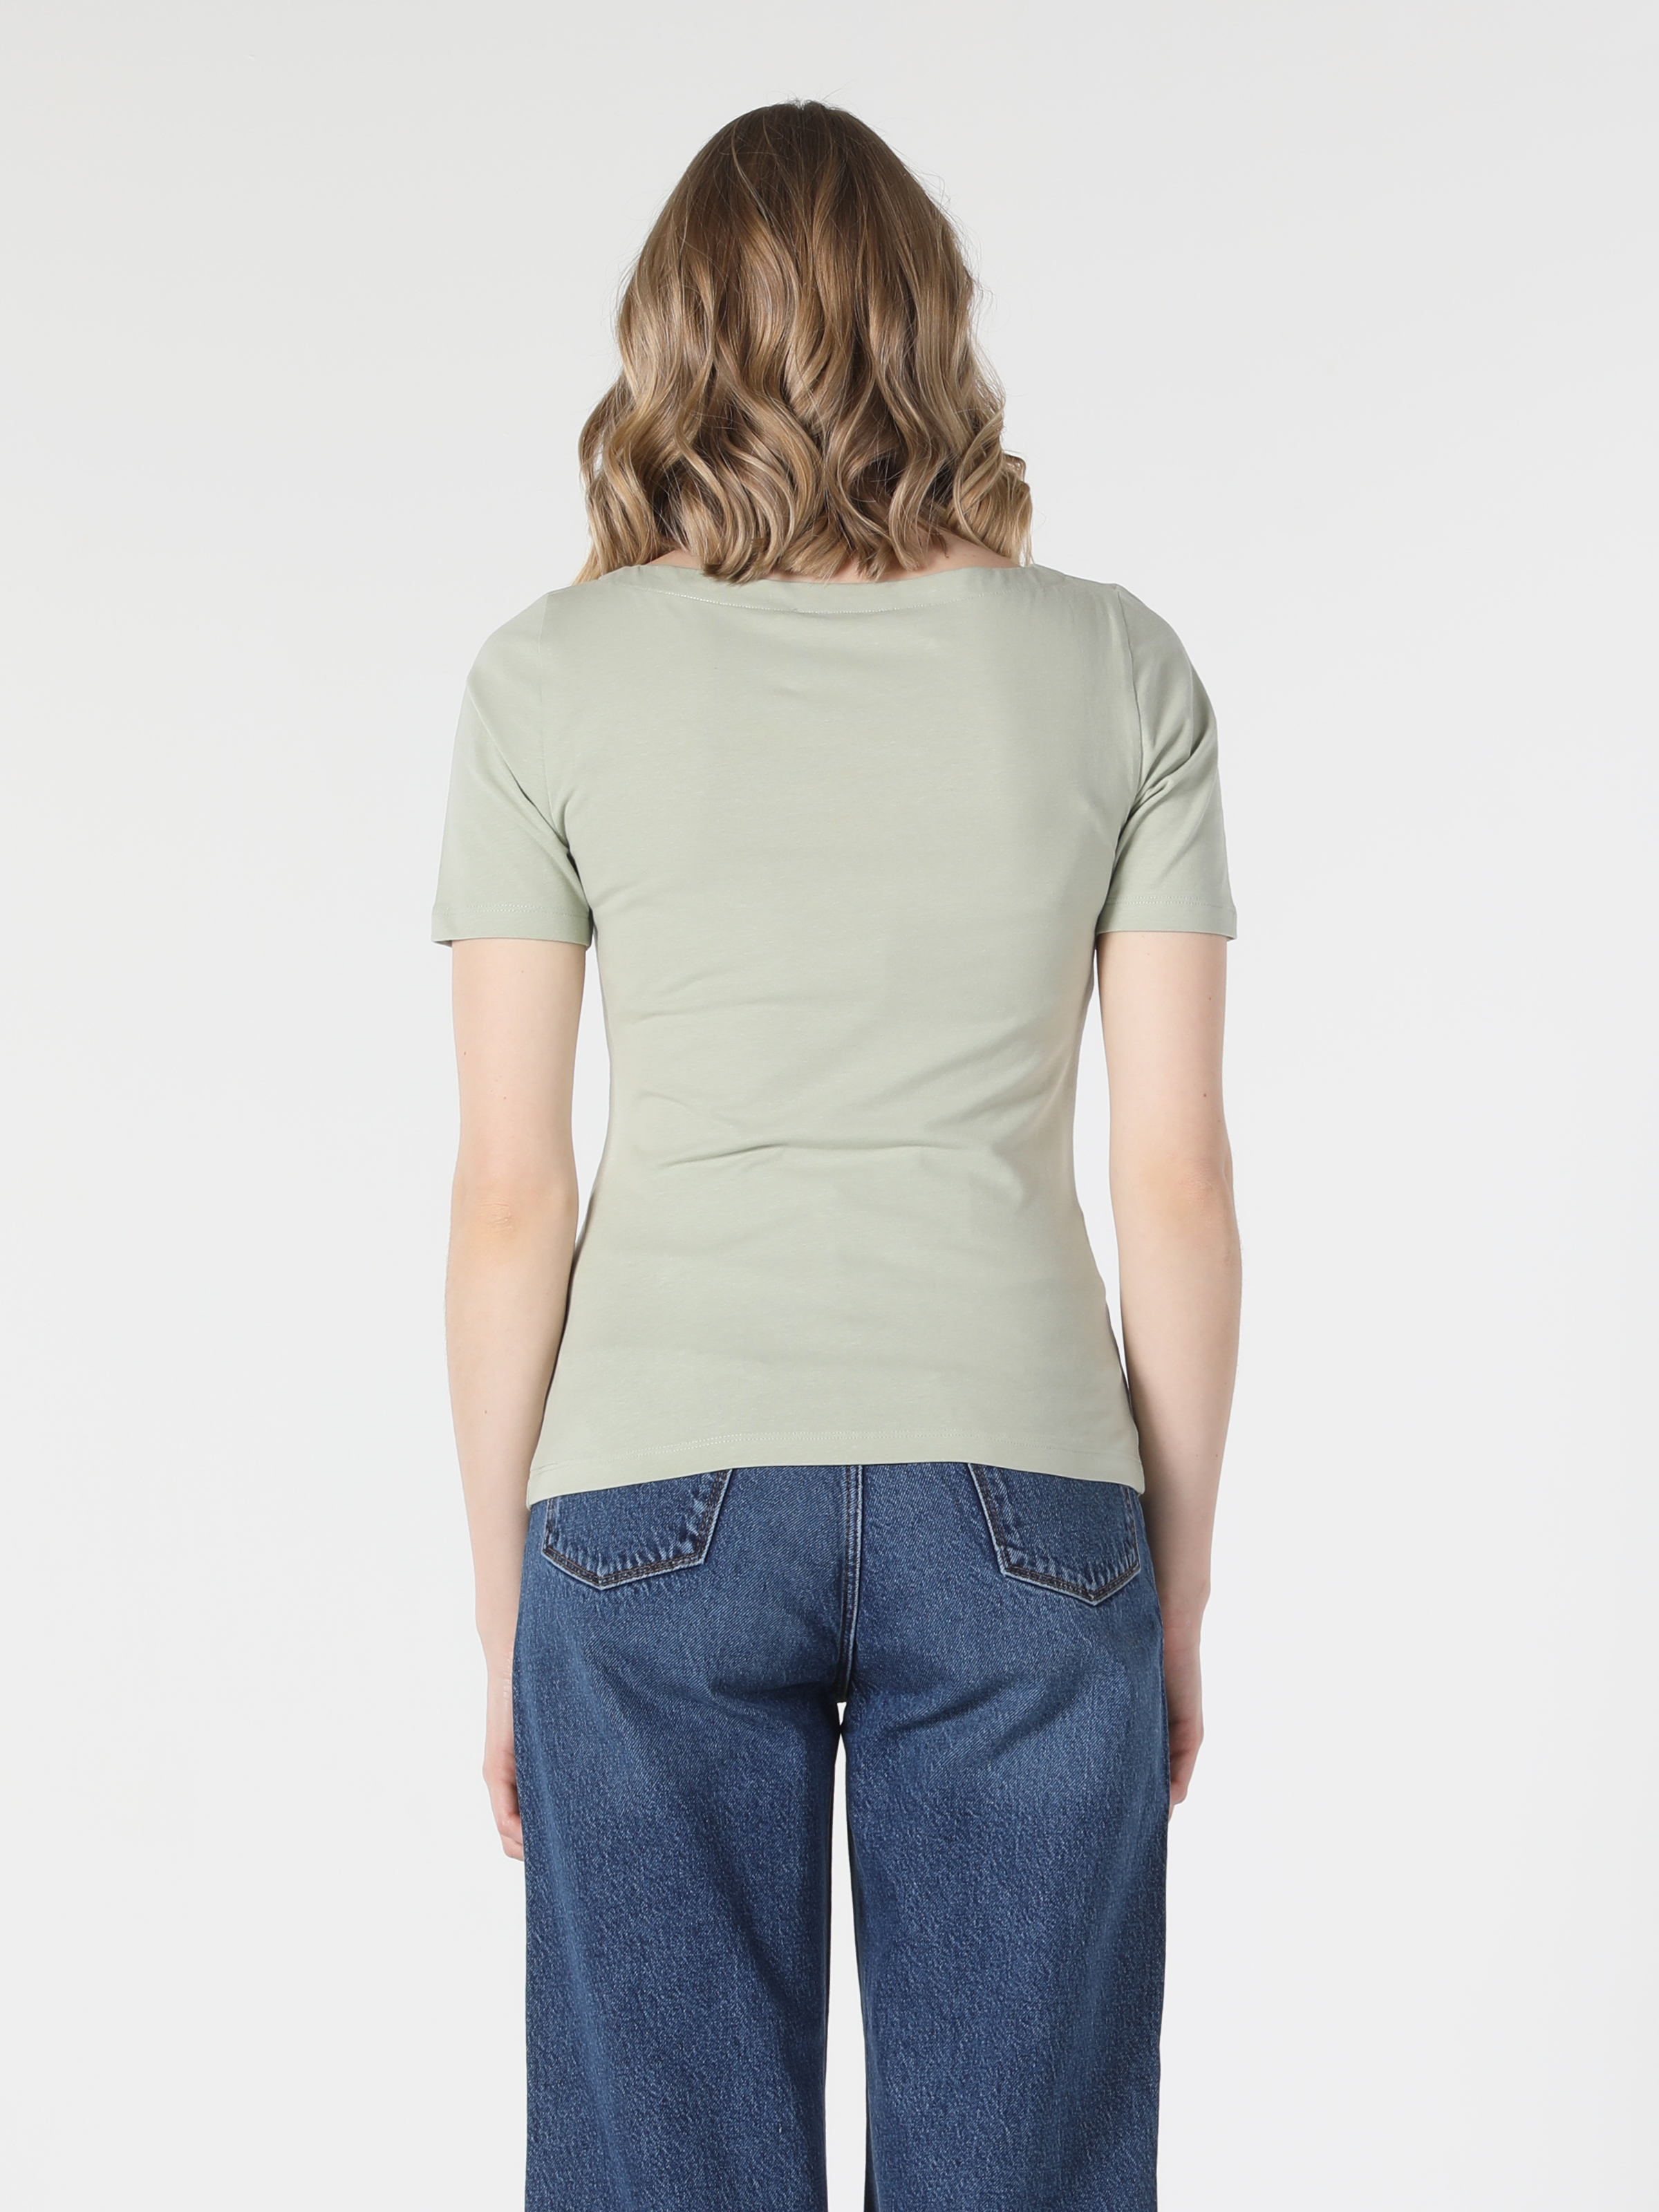 Afișați detalii pentru Tricou Cu Maneca Scurta De Dama Verde Slim Fit  